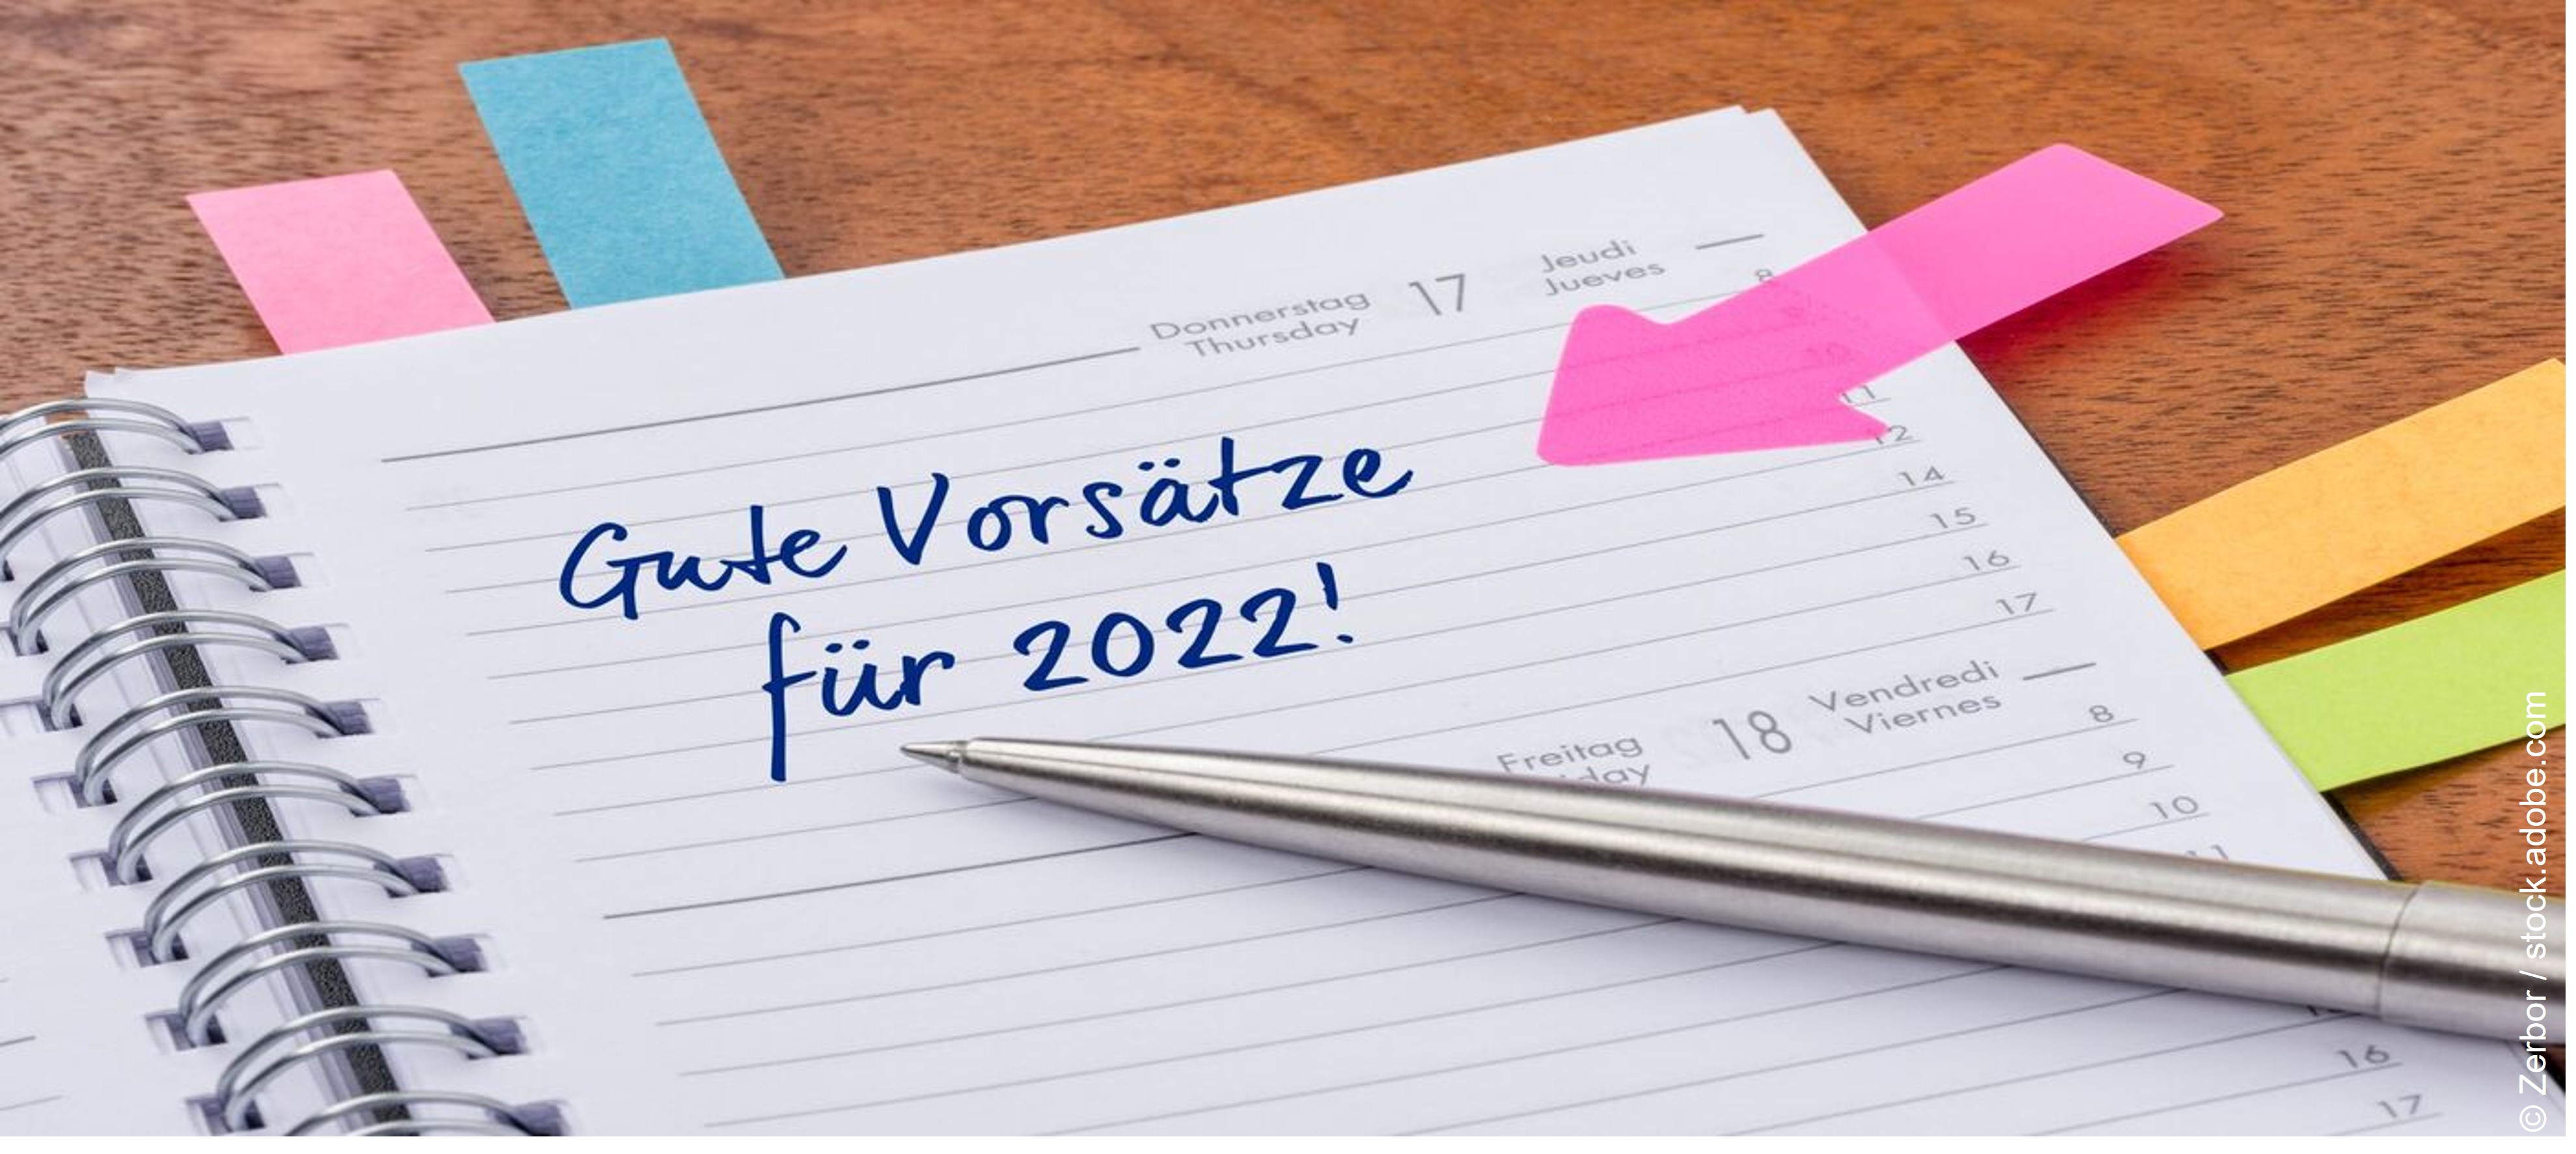 Ein Kalendereintrag: Gute Vorsätze für 2022!